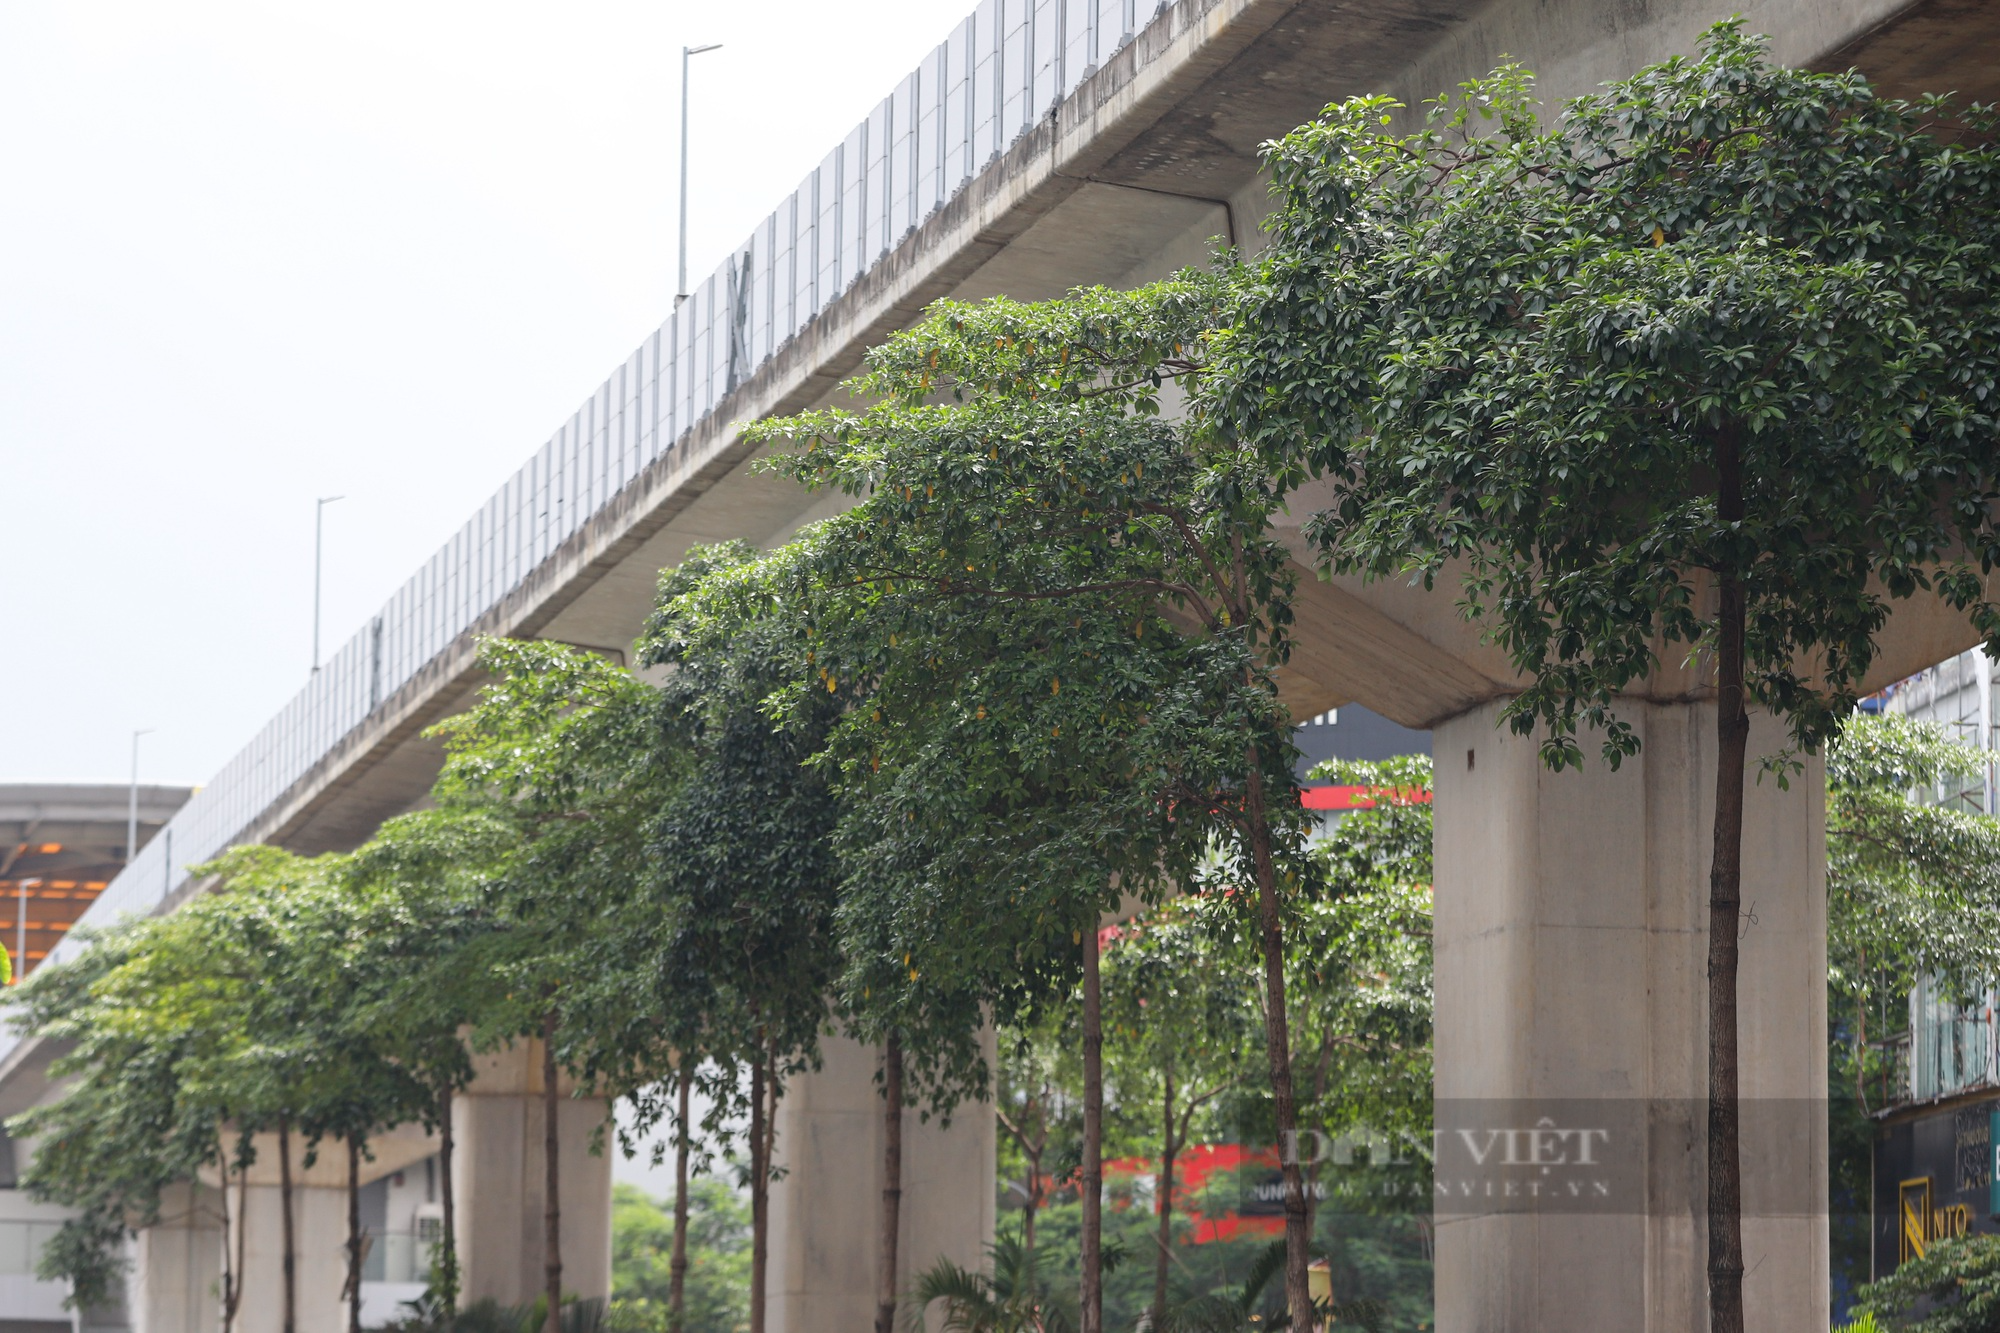 Hàng loạt cây xanh tại Hà Nội khi lớn đã “đụng” vào gầm bê tông đường sắt Cát Linh-Hà Đông - Ảnh 9.